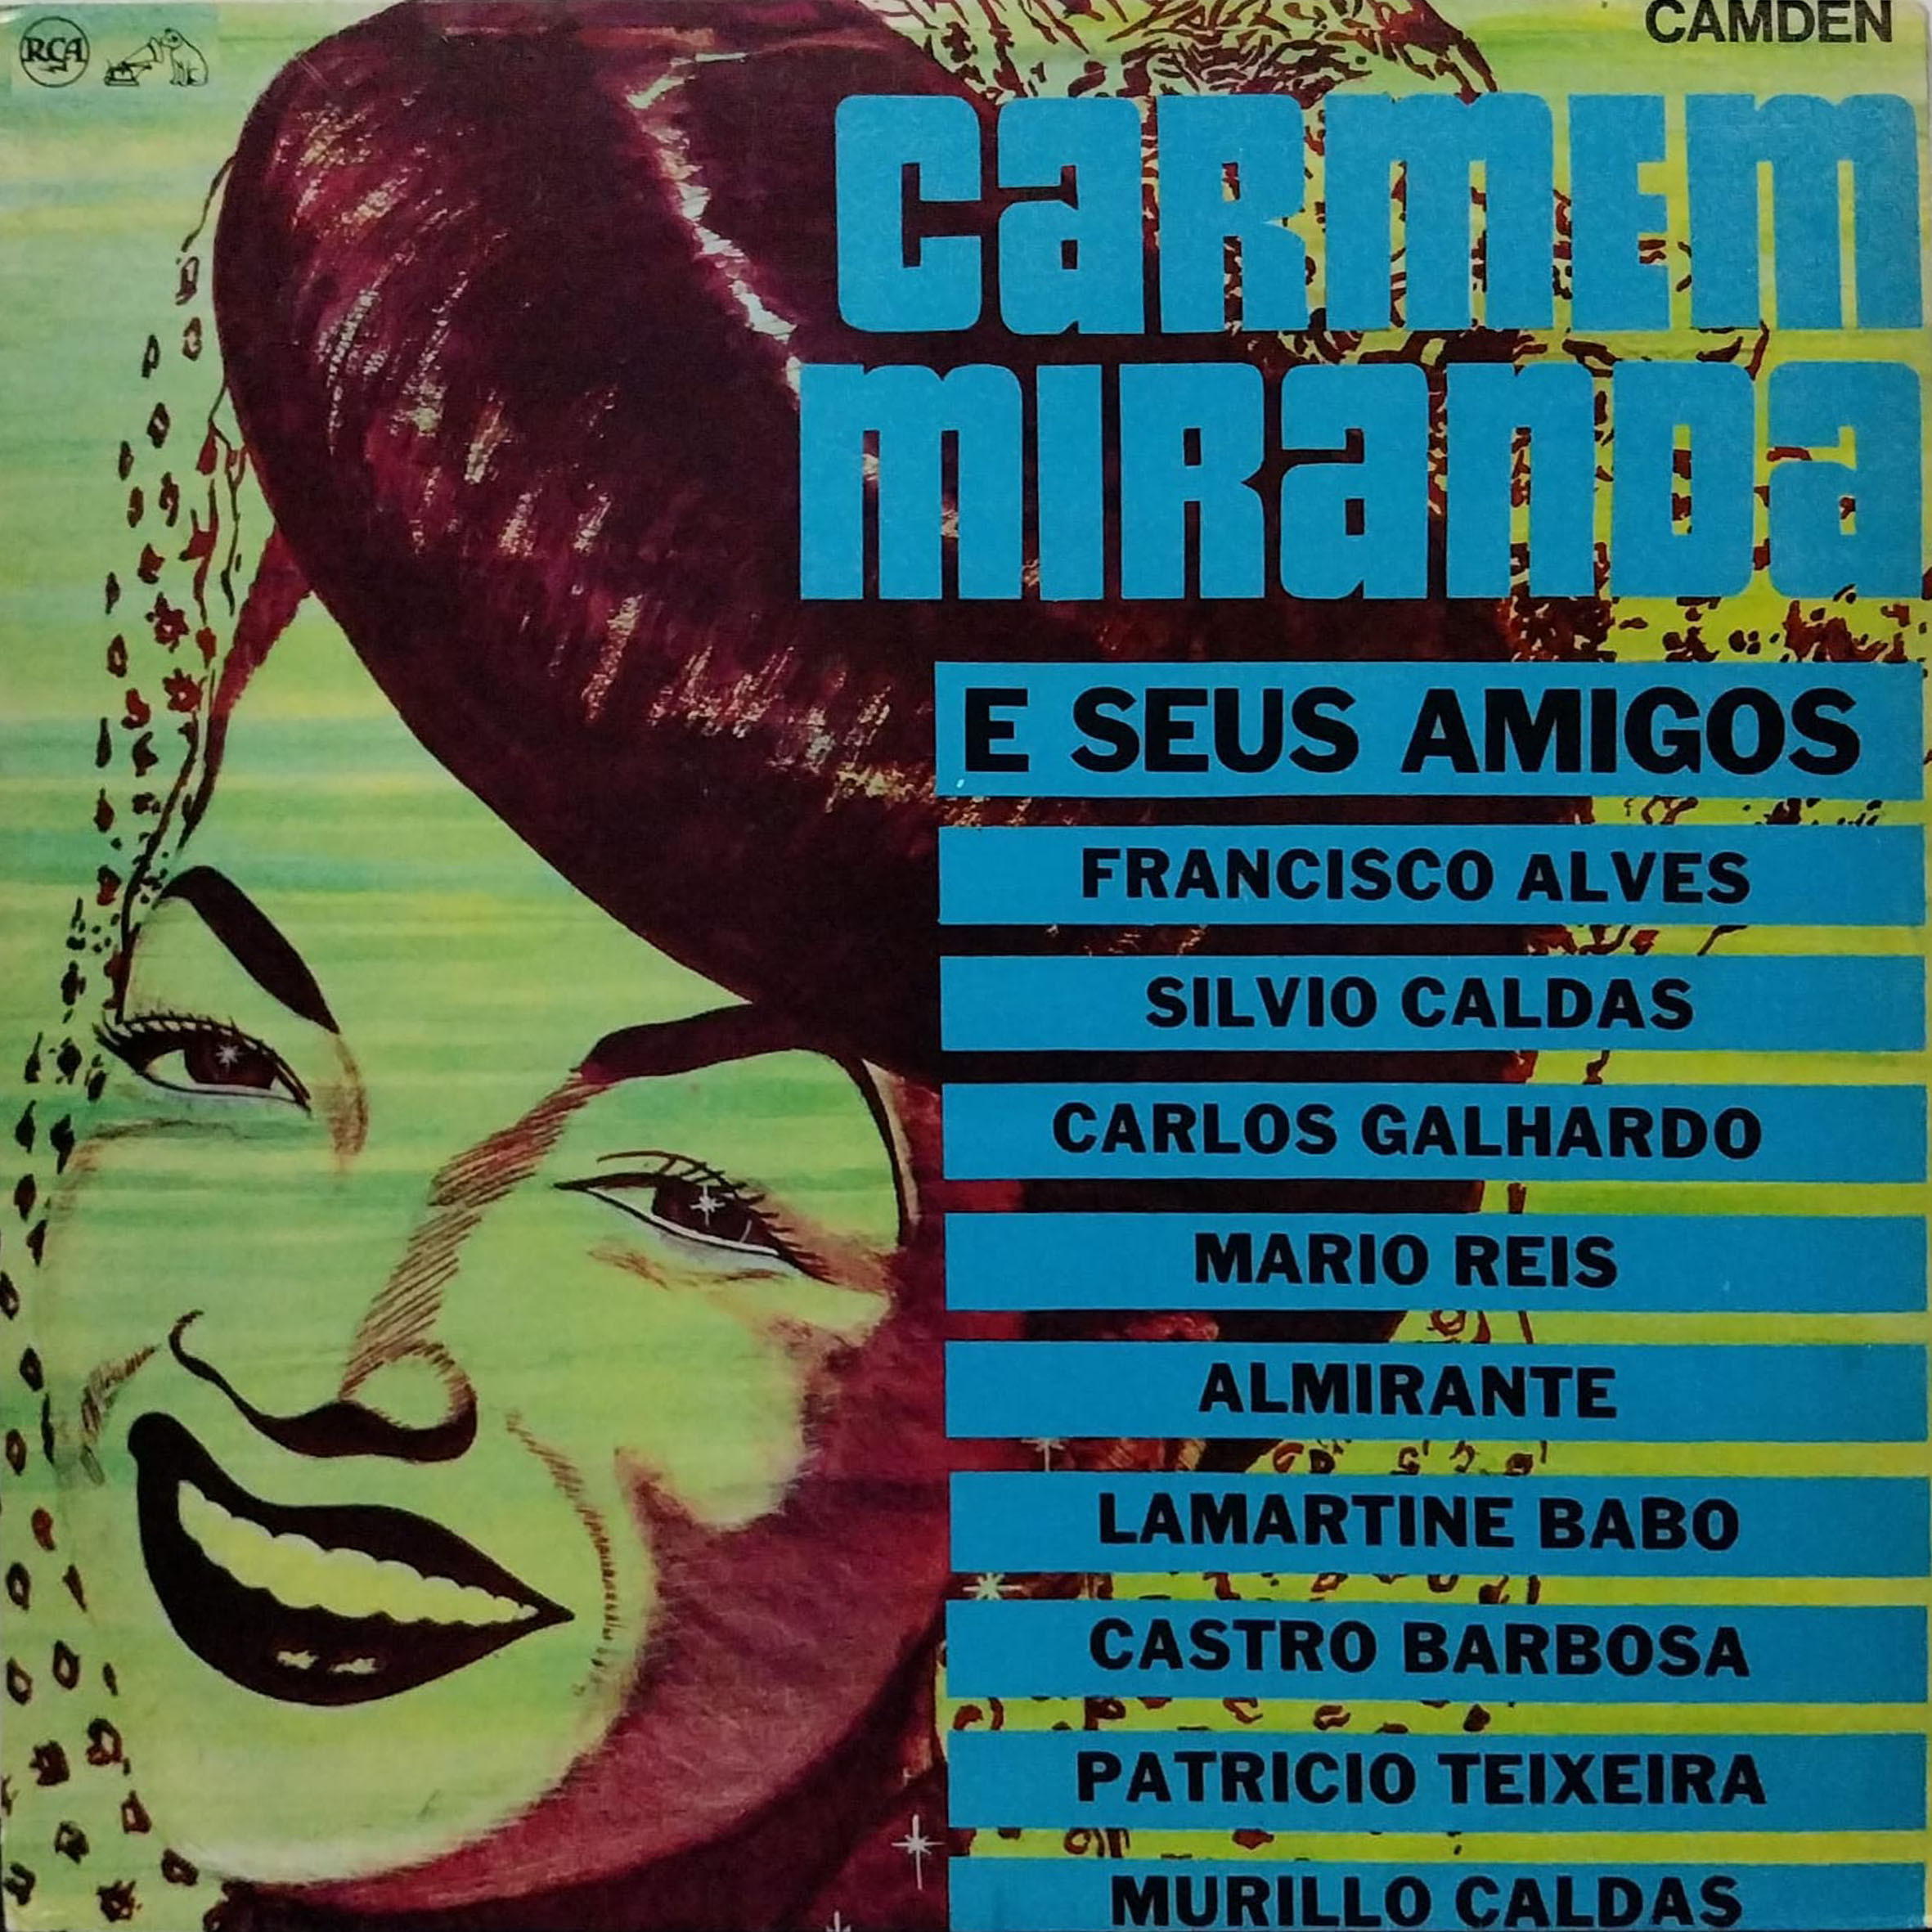 Vinil - Carmen Miranda - E Seus Amigos